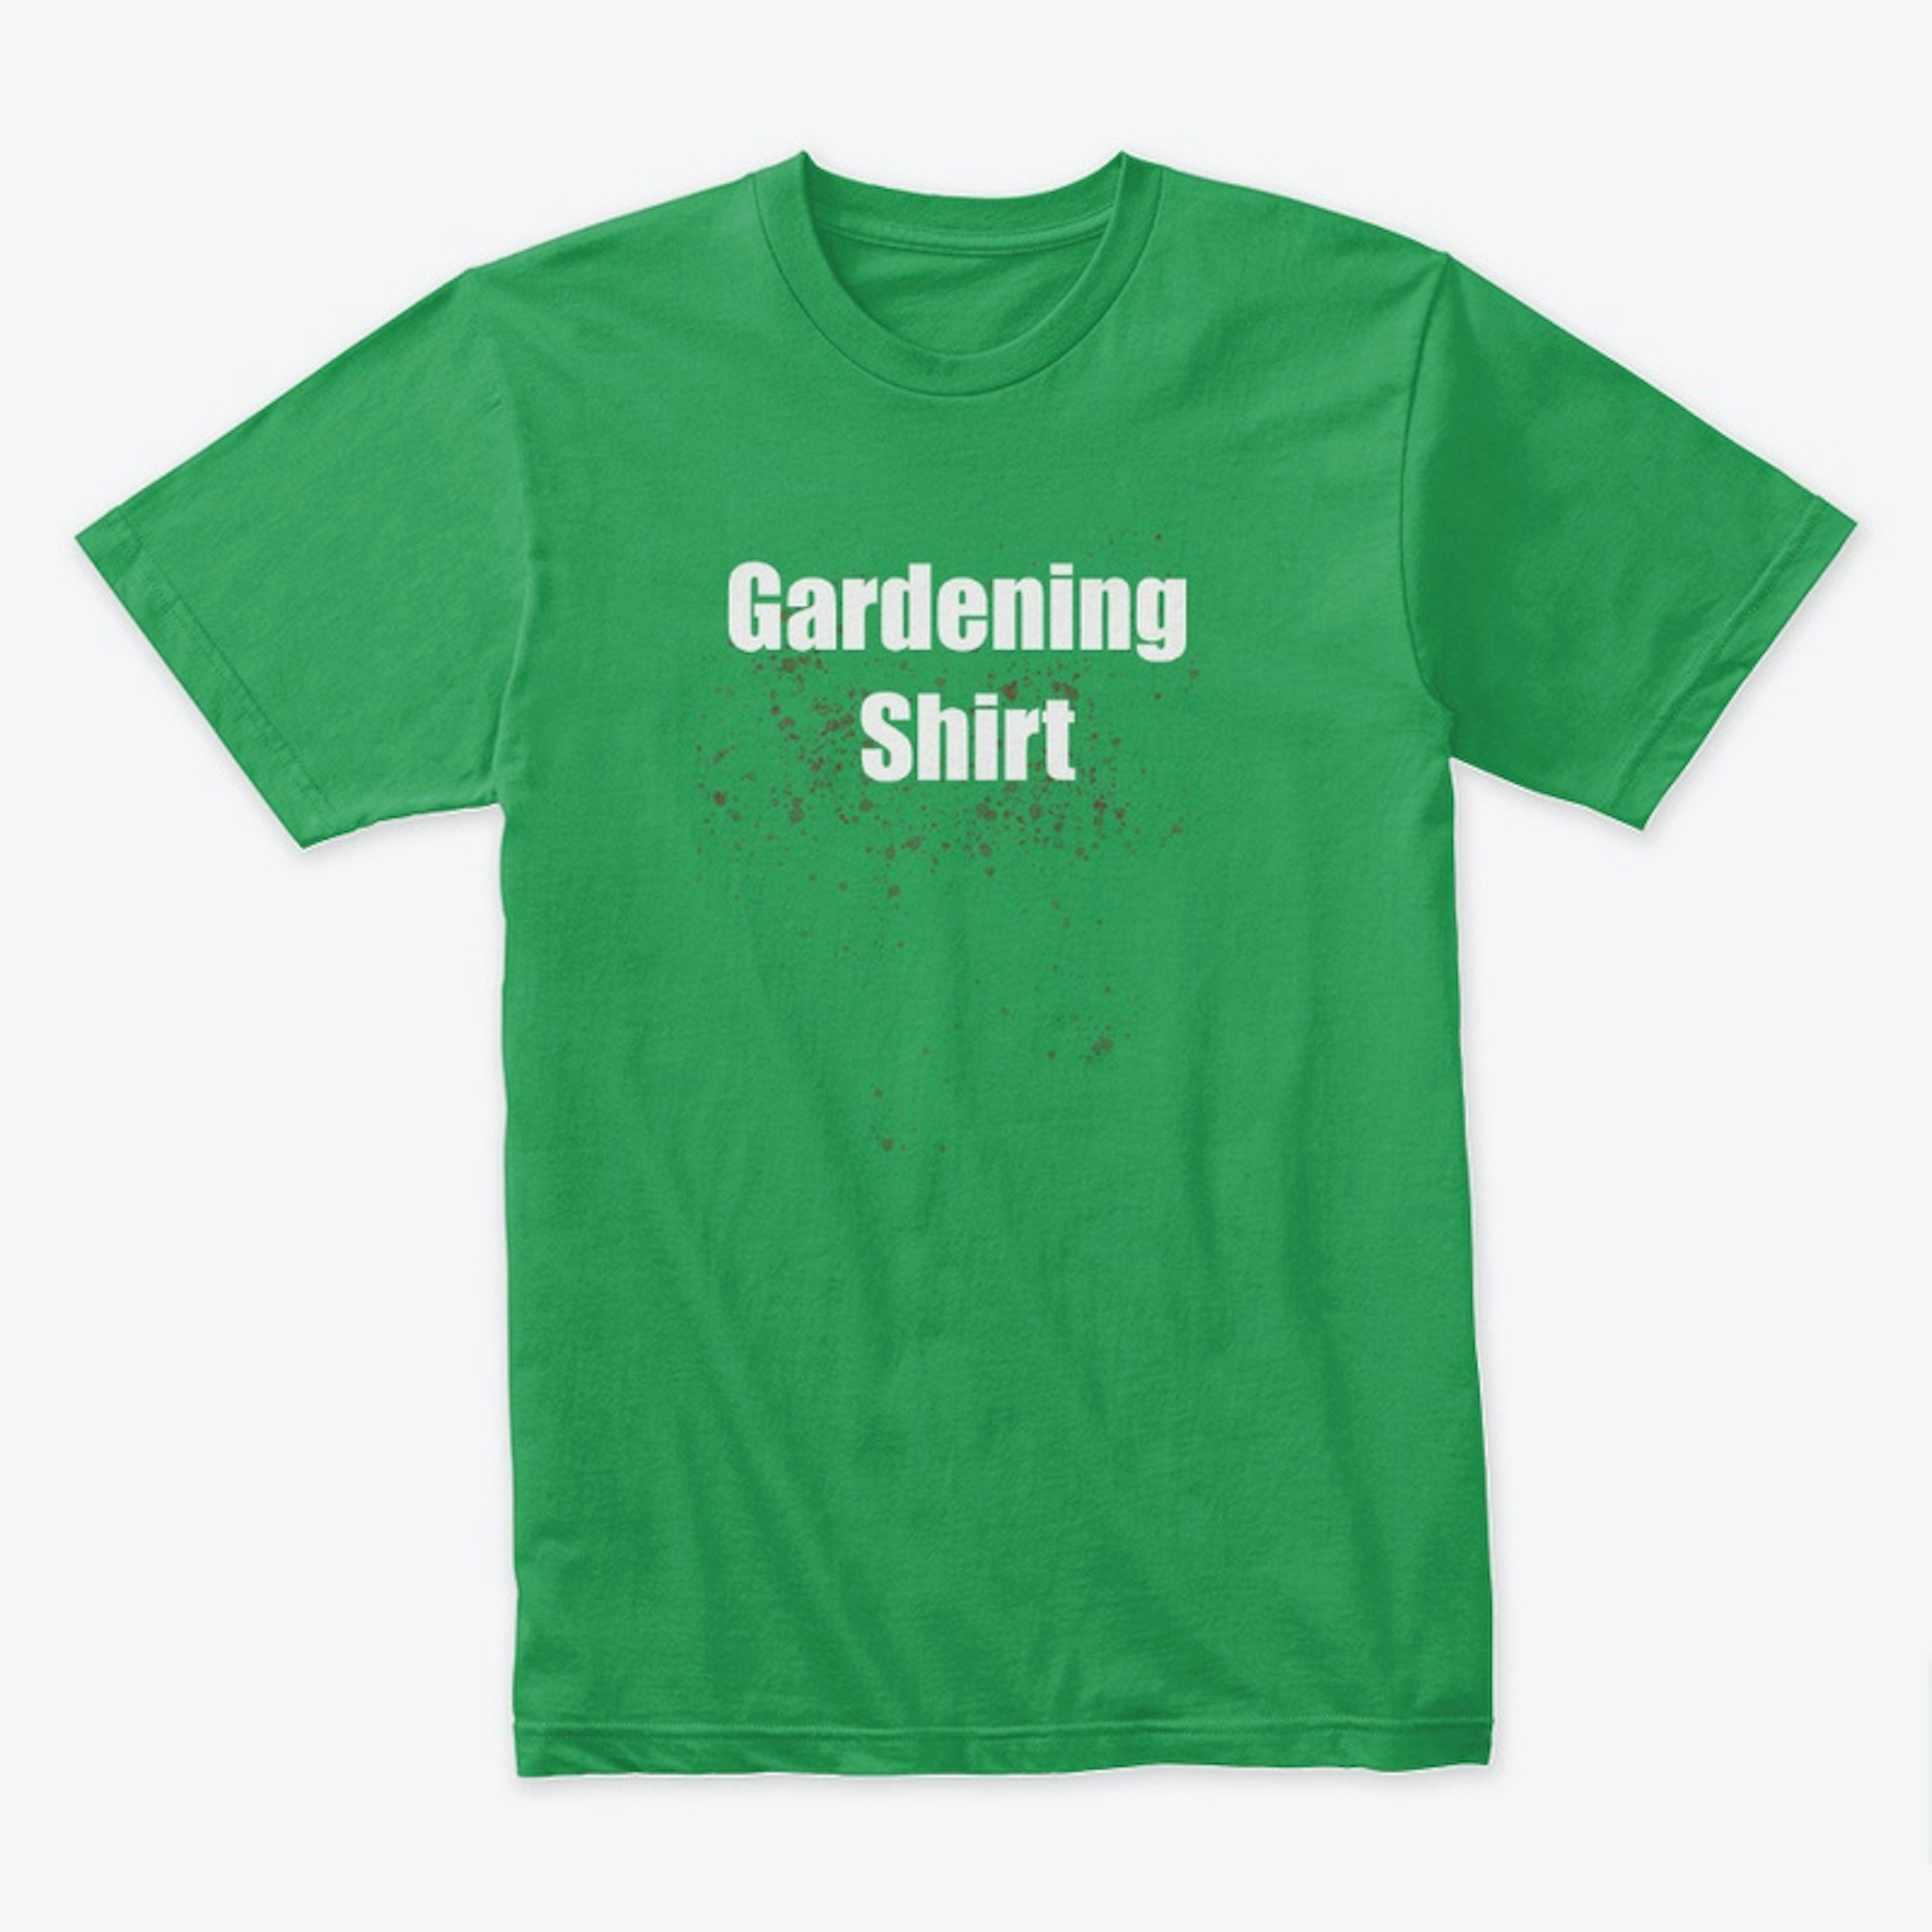 The Gardening Shirt